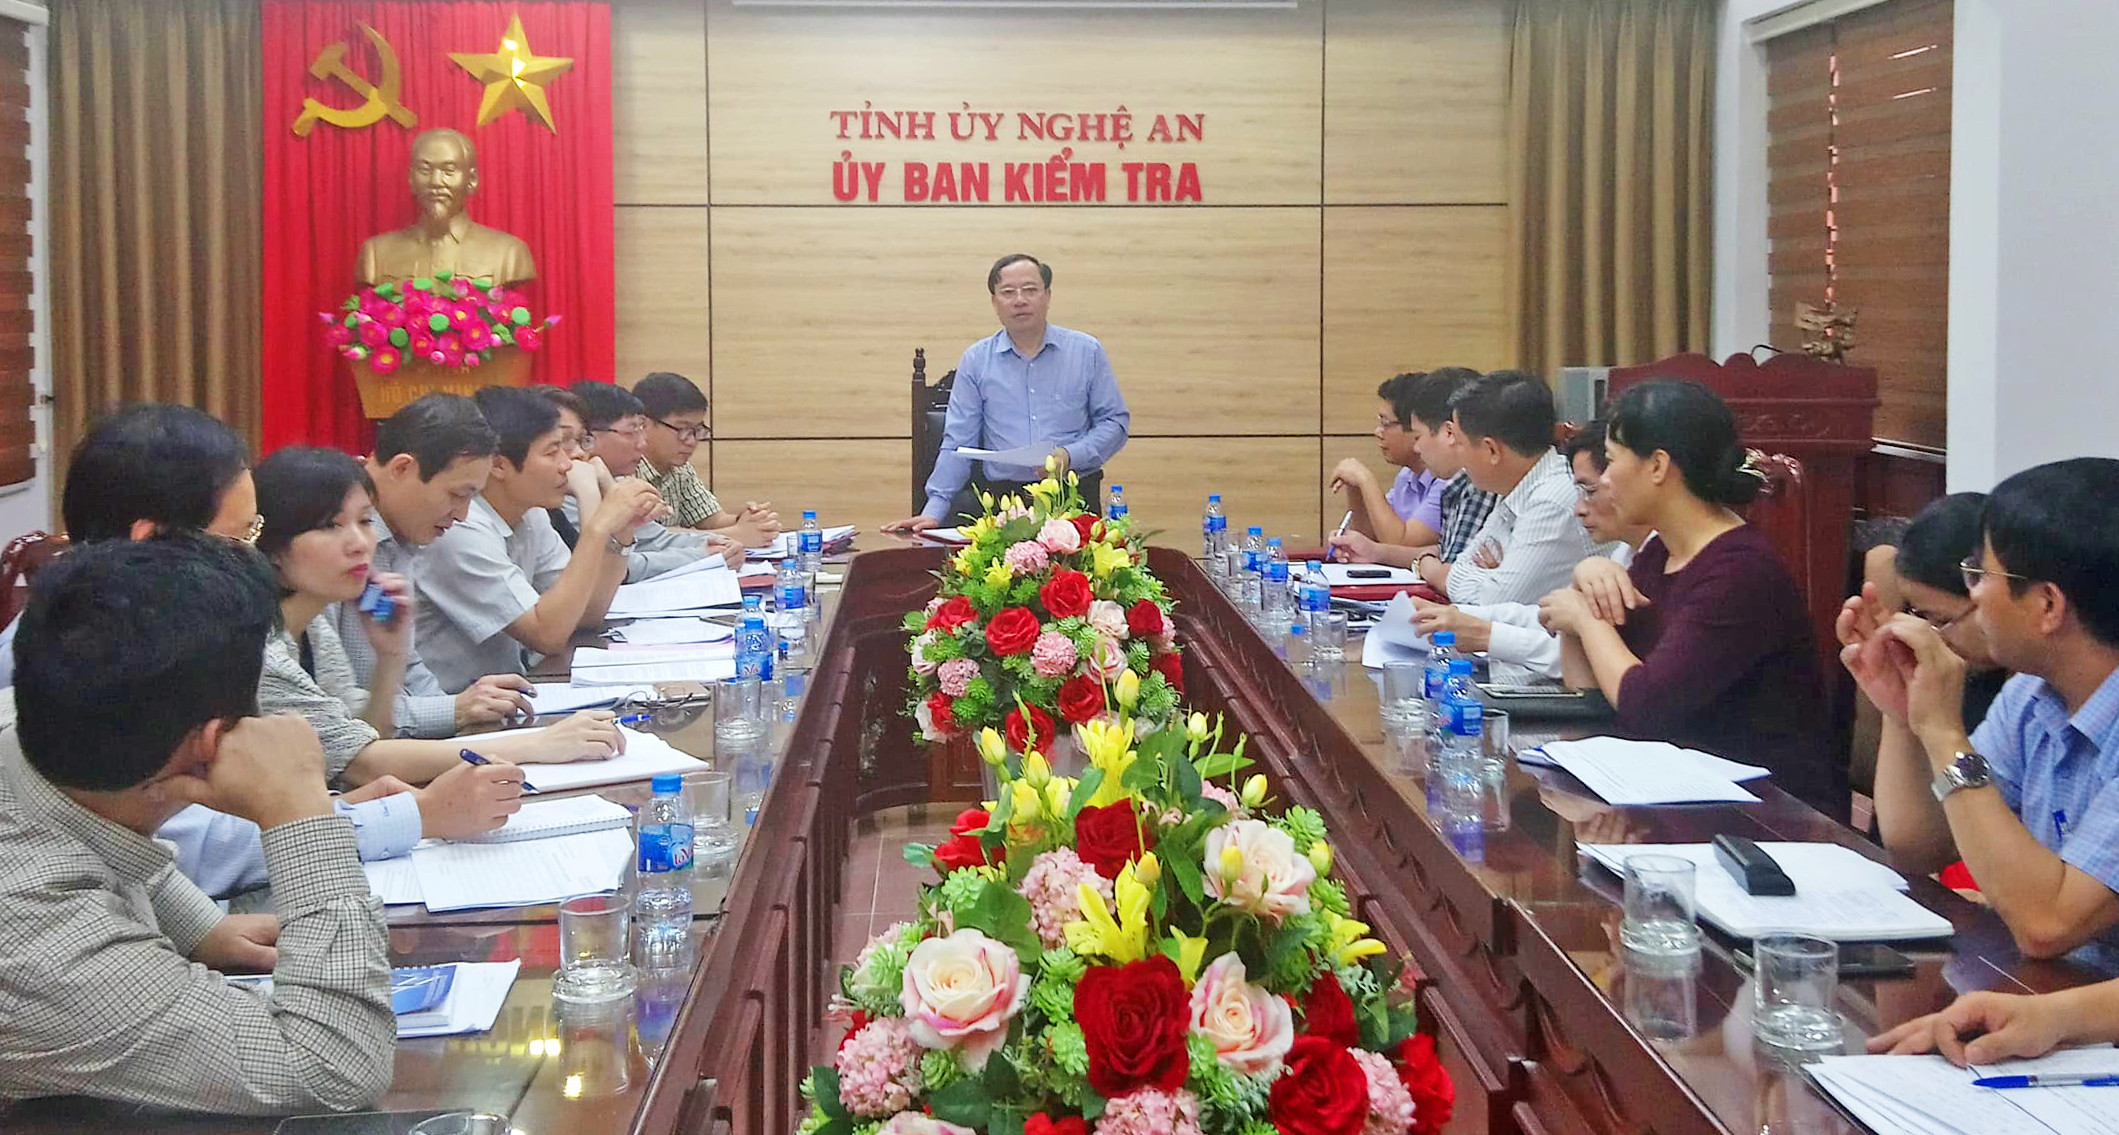 Đồng chí Nguyễn Tất Lý - Phó Chủ nhiệm Ủy ban Kiểm tra Tỉnh ủy chủ trì hội nghị. Ảnh: Quang Minh